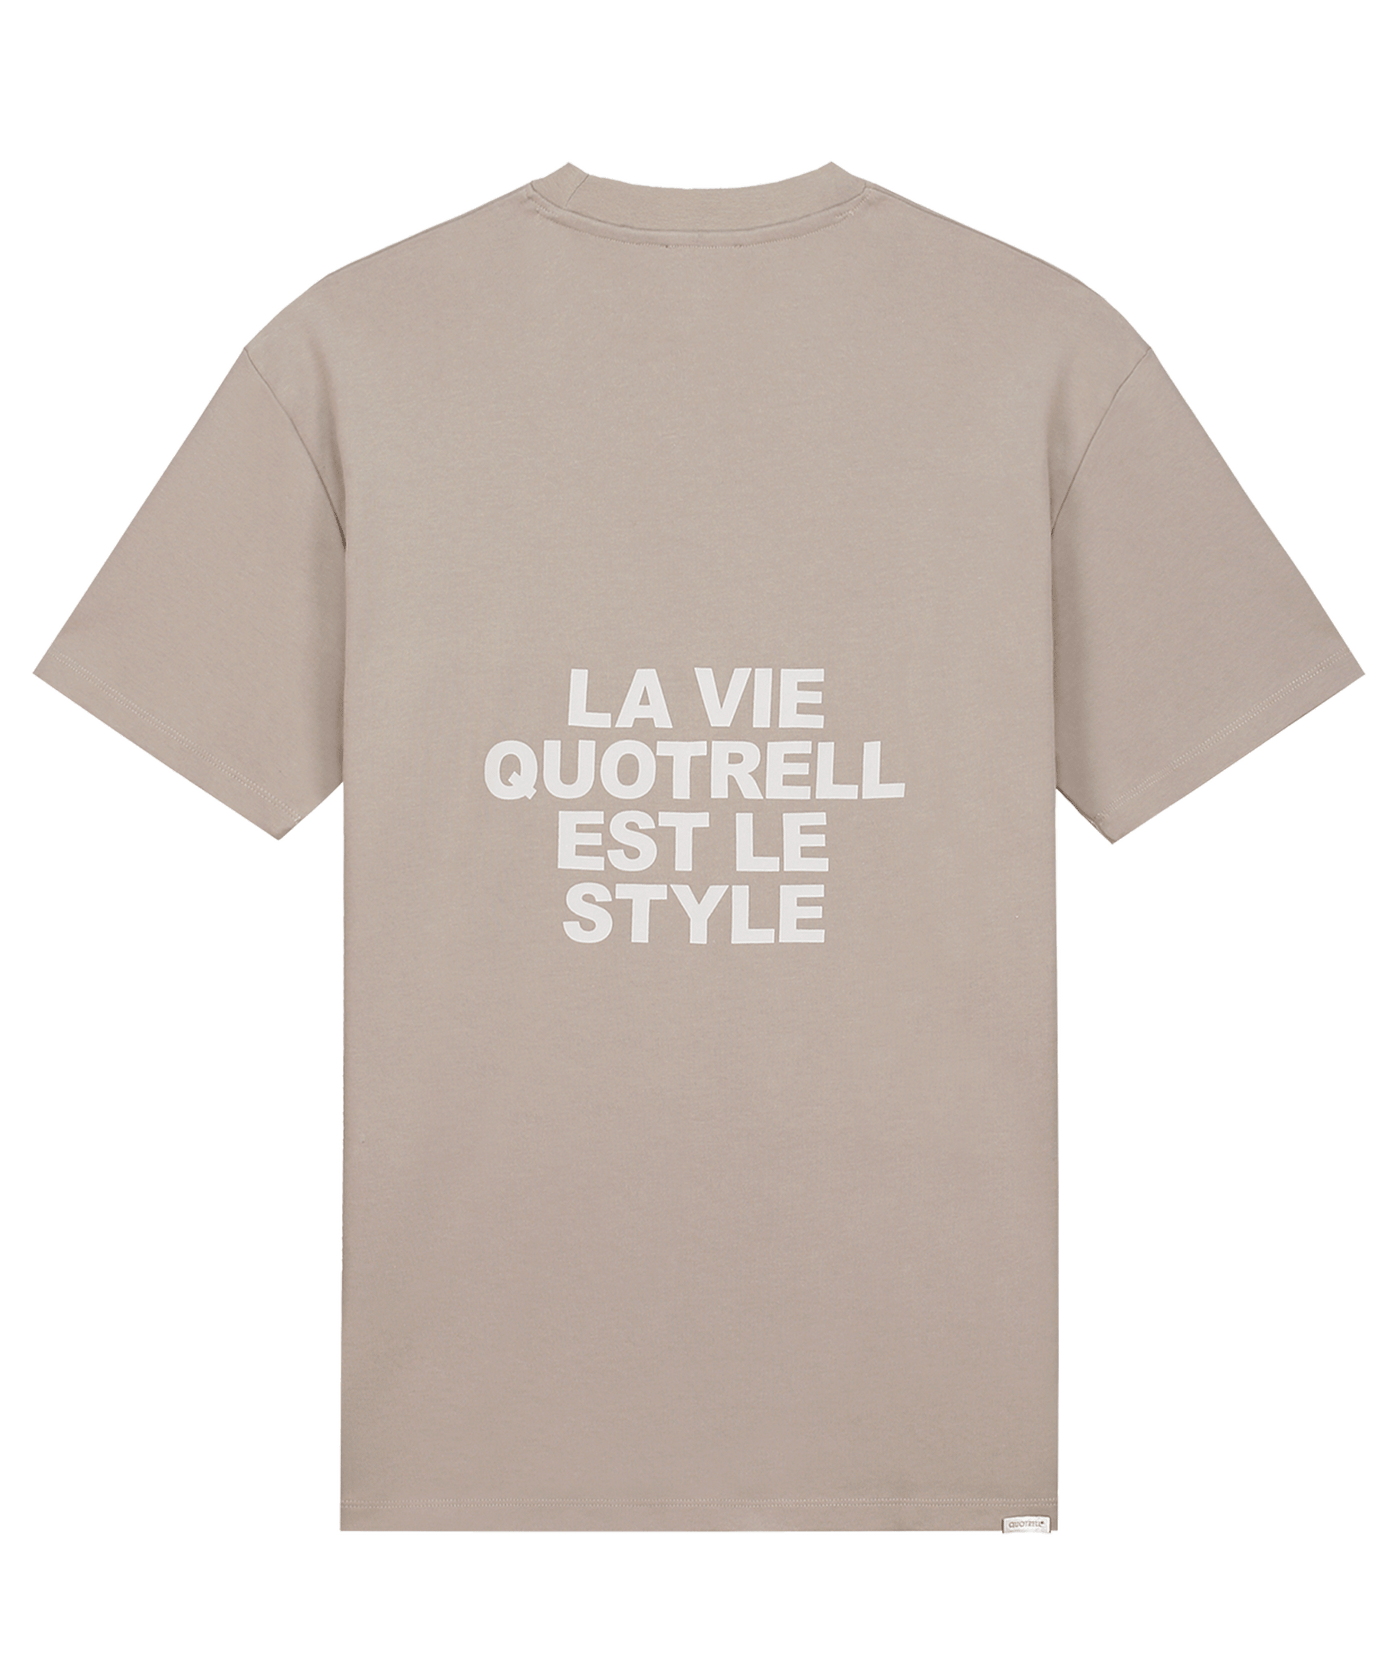 Quotrell - La Vie - T-shirt - Concrete/cement